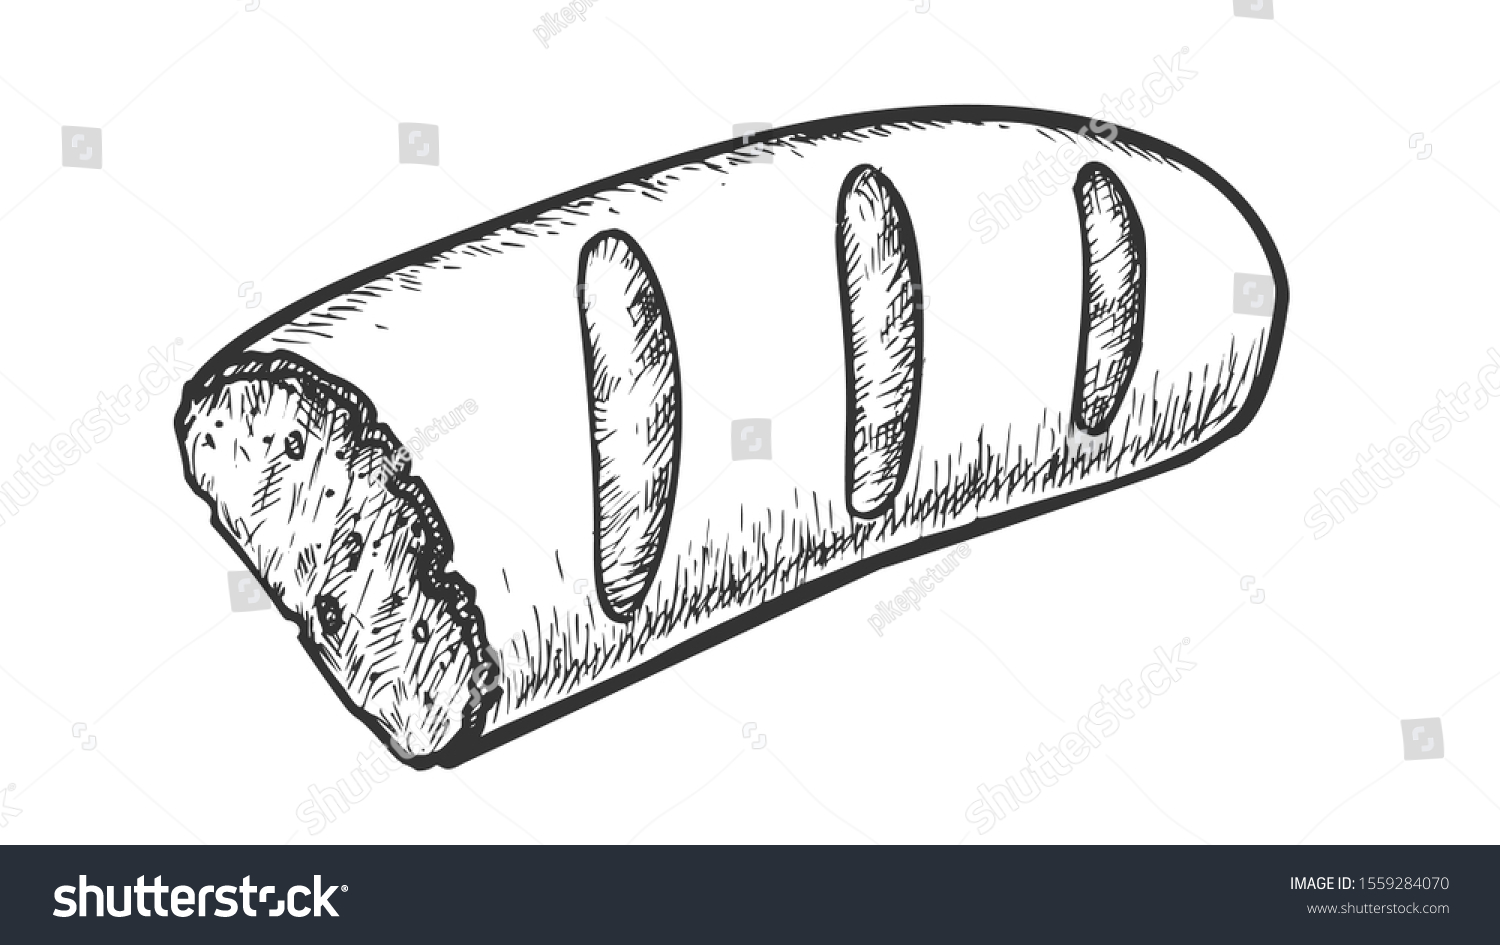 焼き物の半分のフランスパン 白黒のベクター画像 サンドイッチ用の堅いパンの塊 白黒のビンテージ風手描きのベーカリー栄養彫刻コンセプトテンプレート のベクター画像素材 ロイヤリティフリー